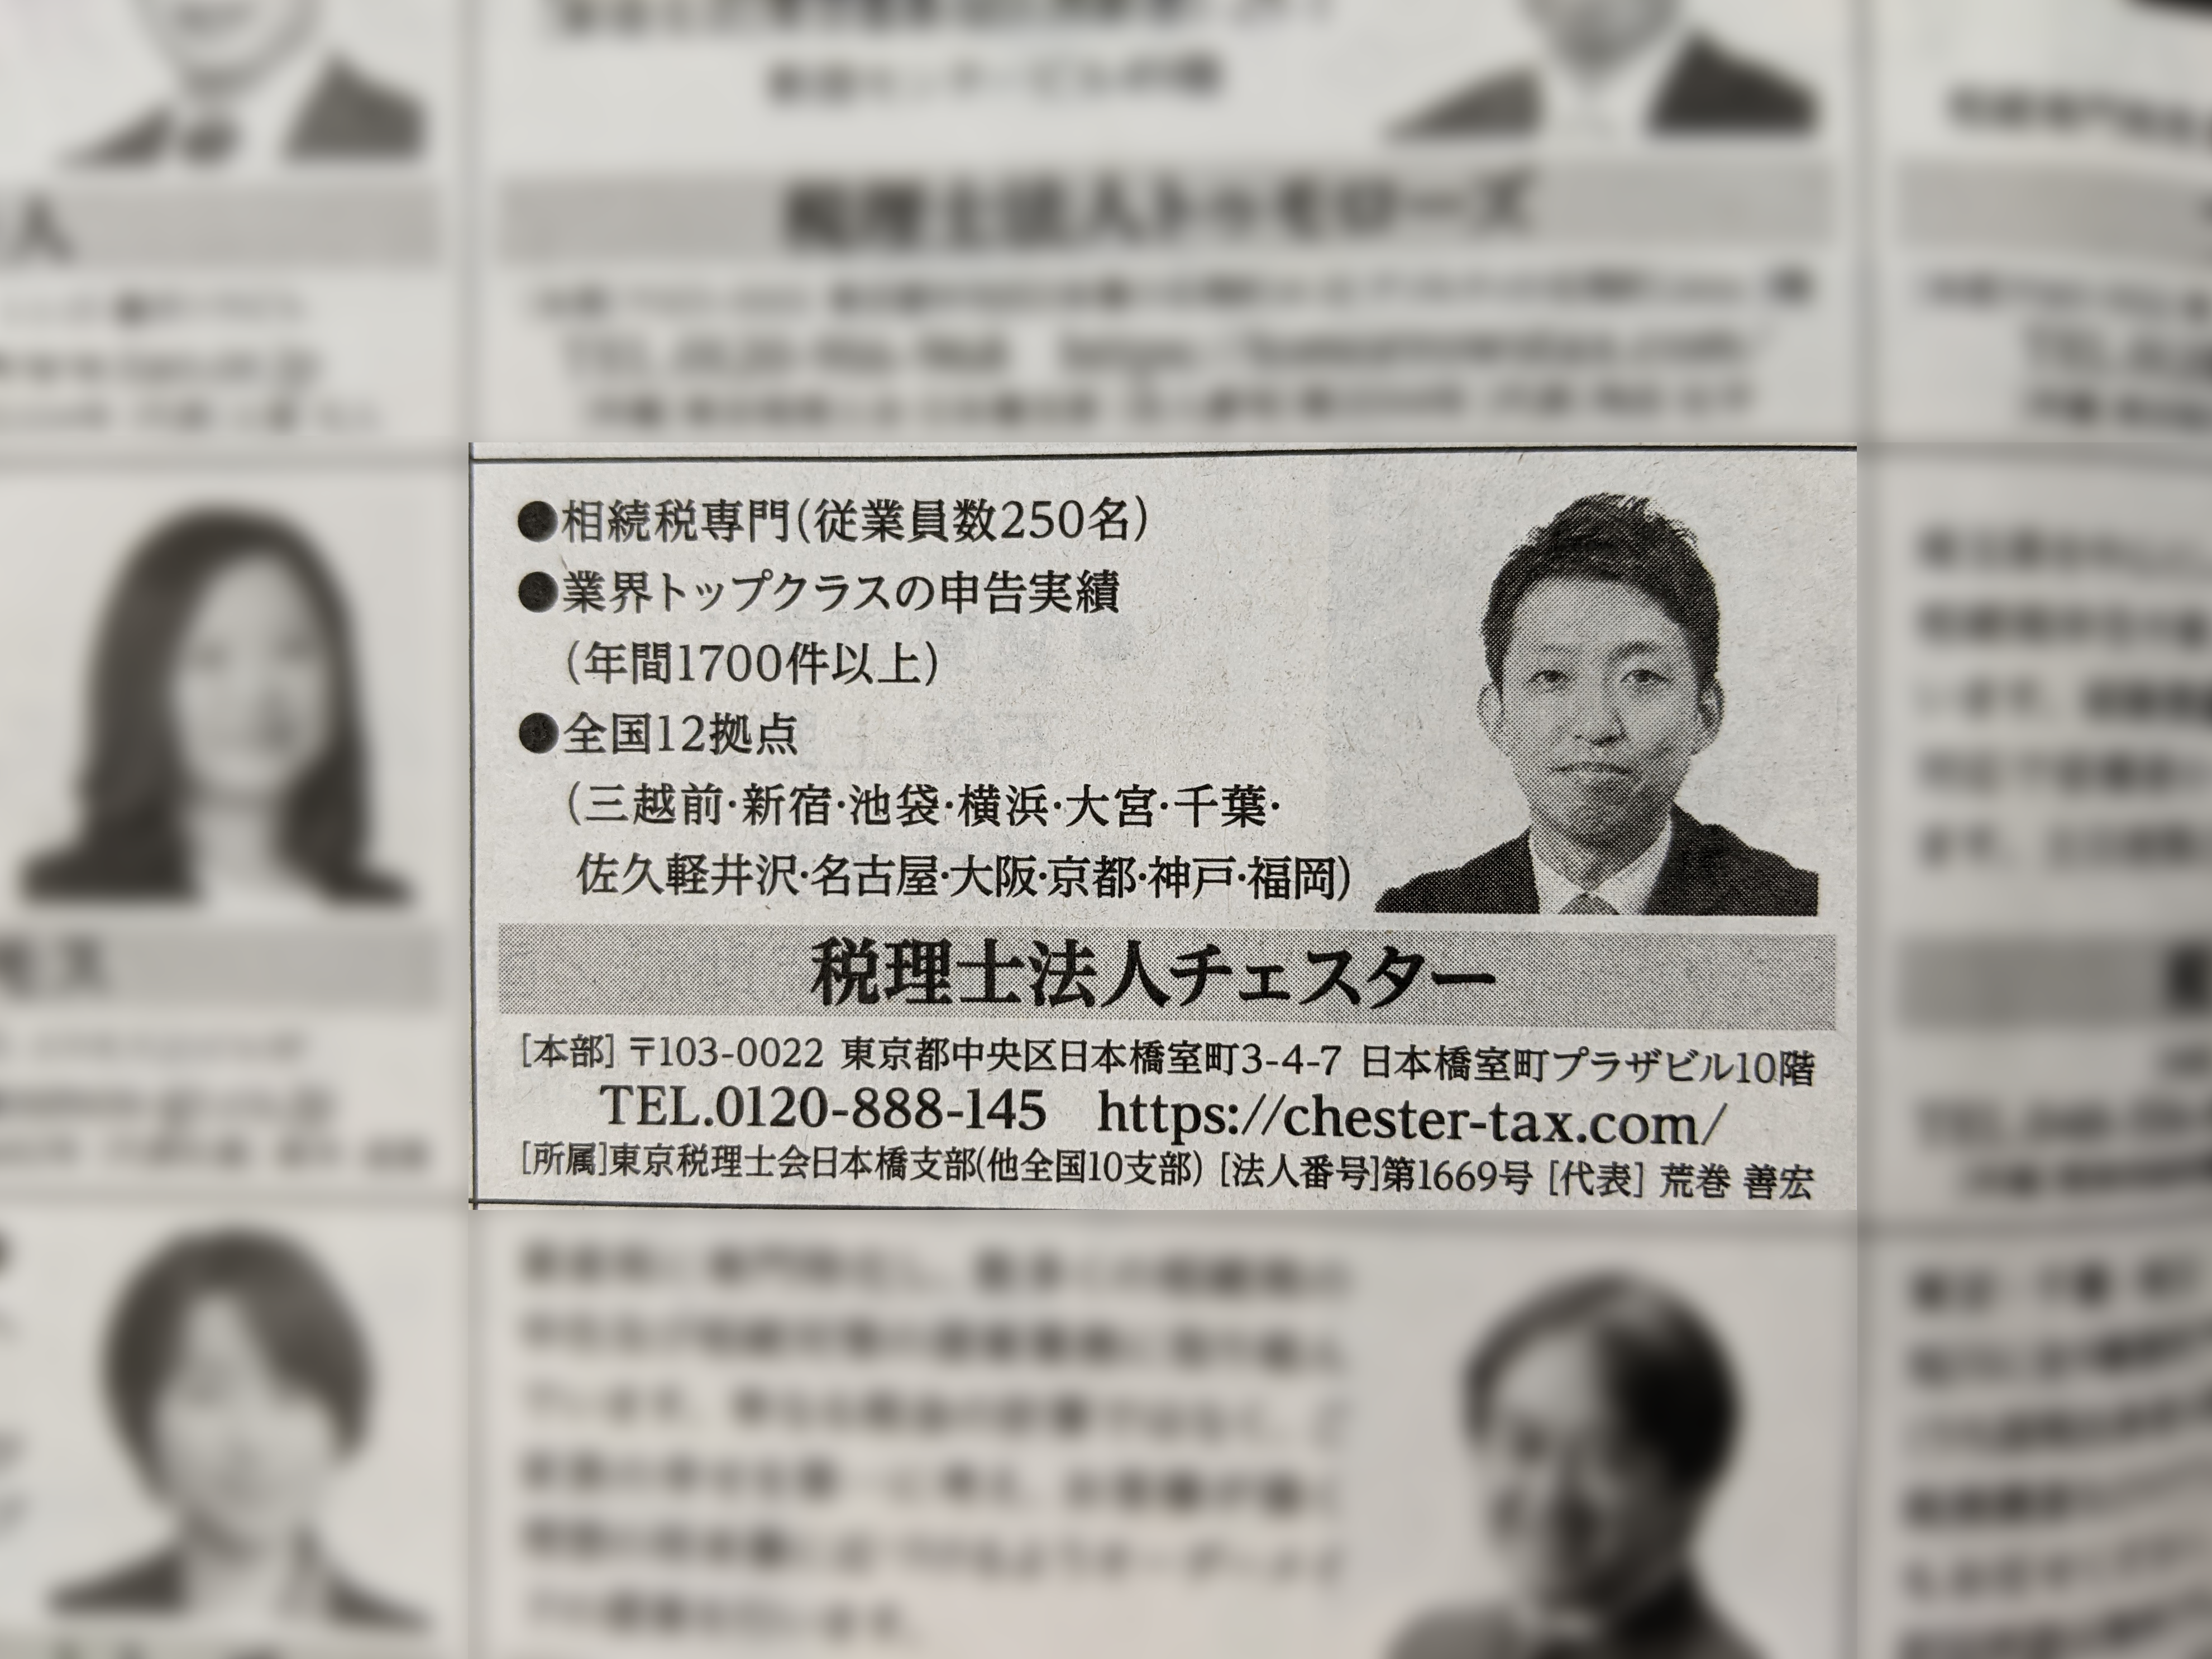 【新聞】日本経済新聞（4月1日付）に掲載されました